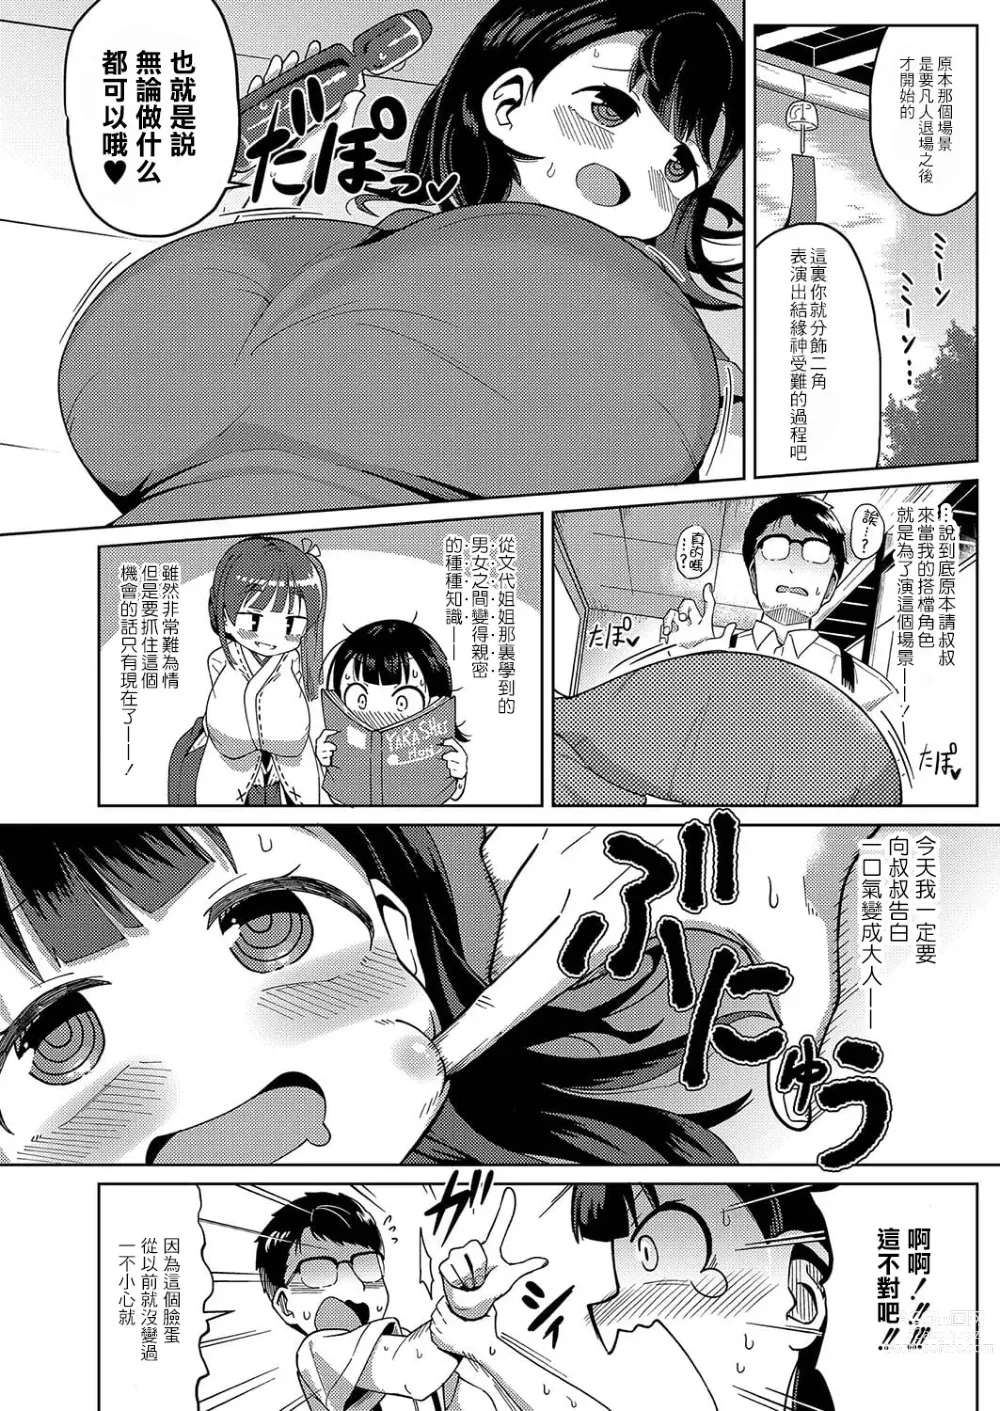 Page 7 of manga Kagura